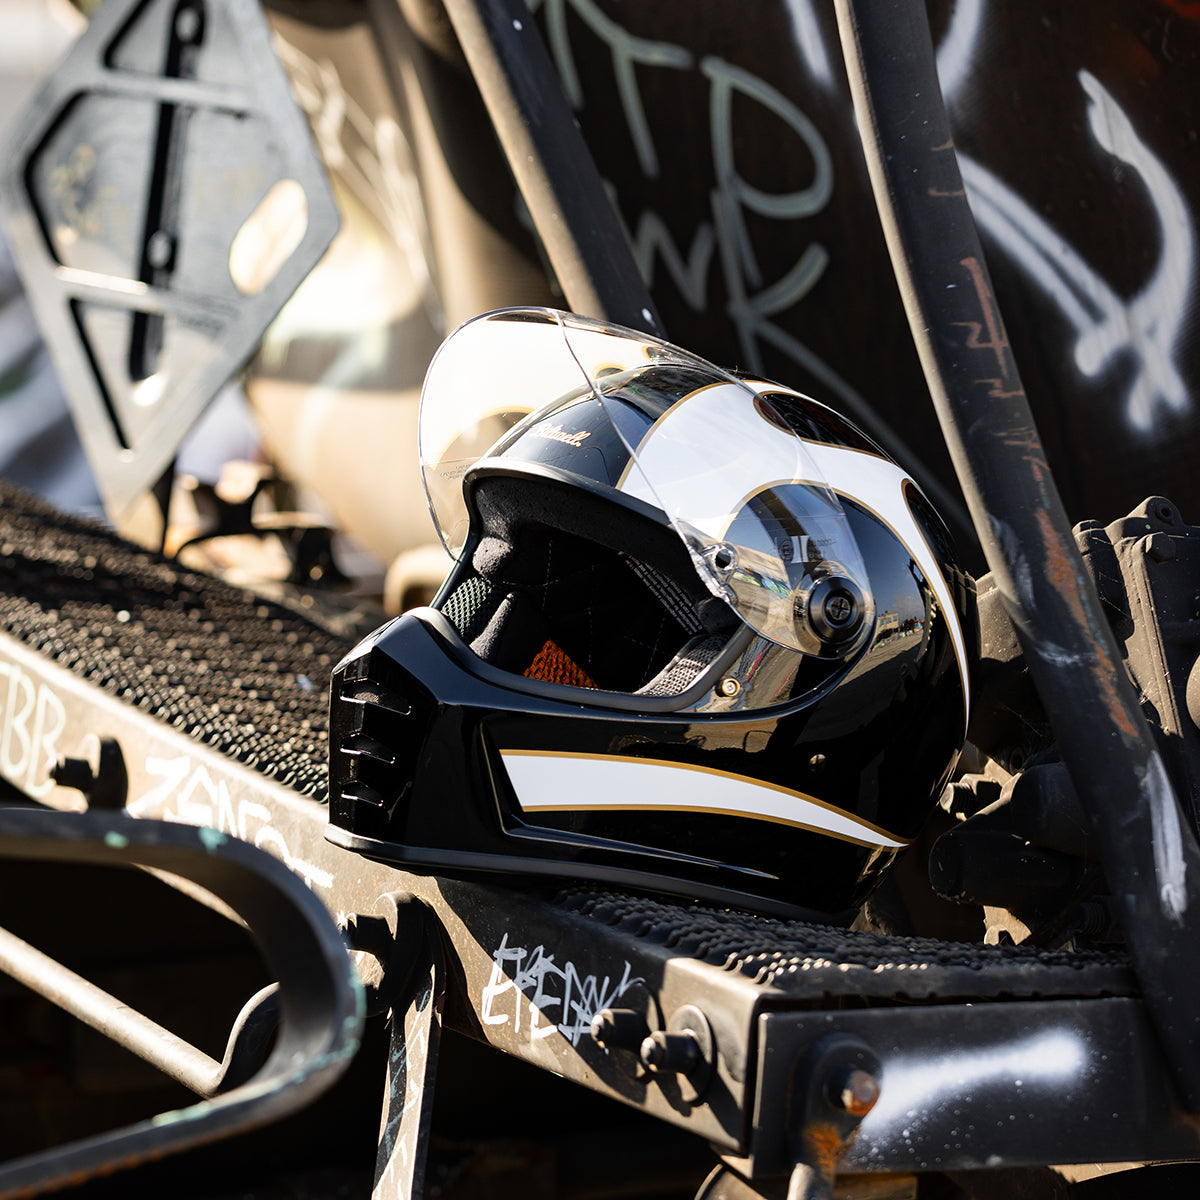 Lane Splitter ECE R22.06 Helmet - Gloss Black / Gloss White Flames